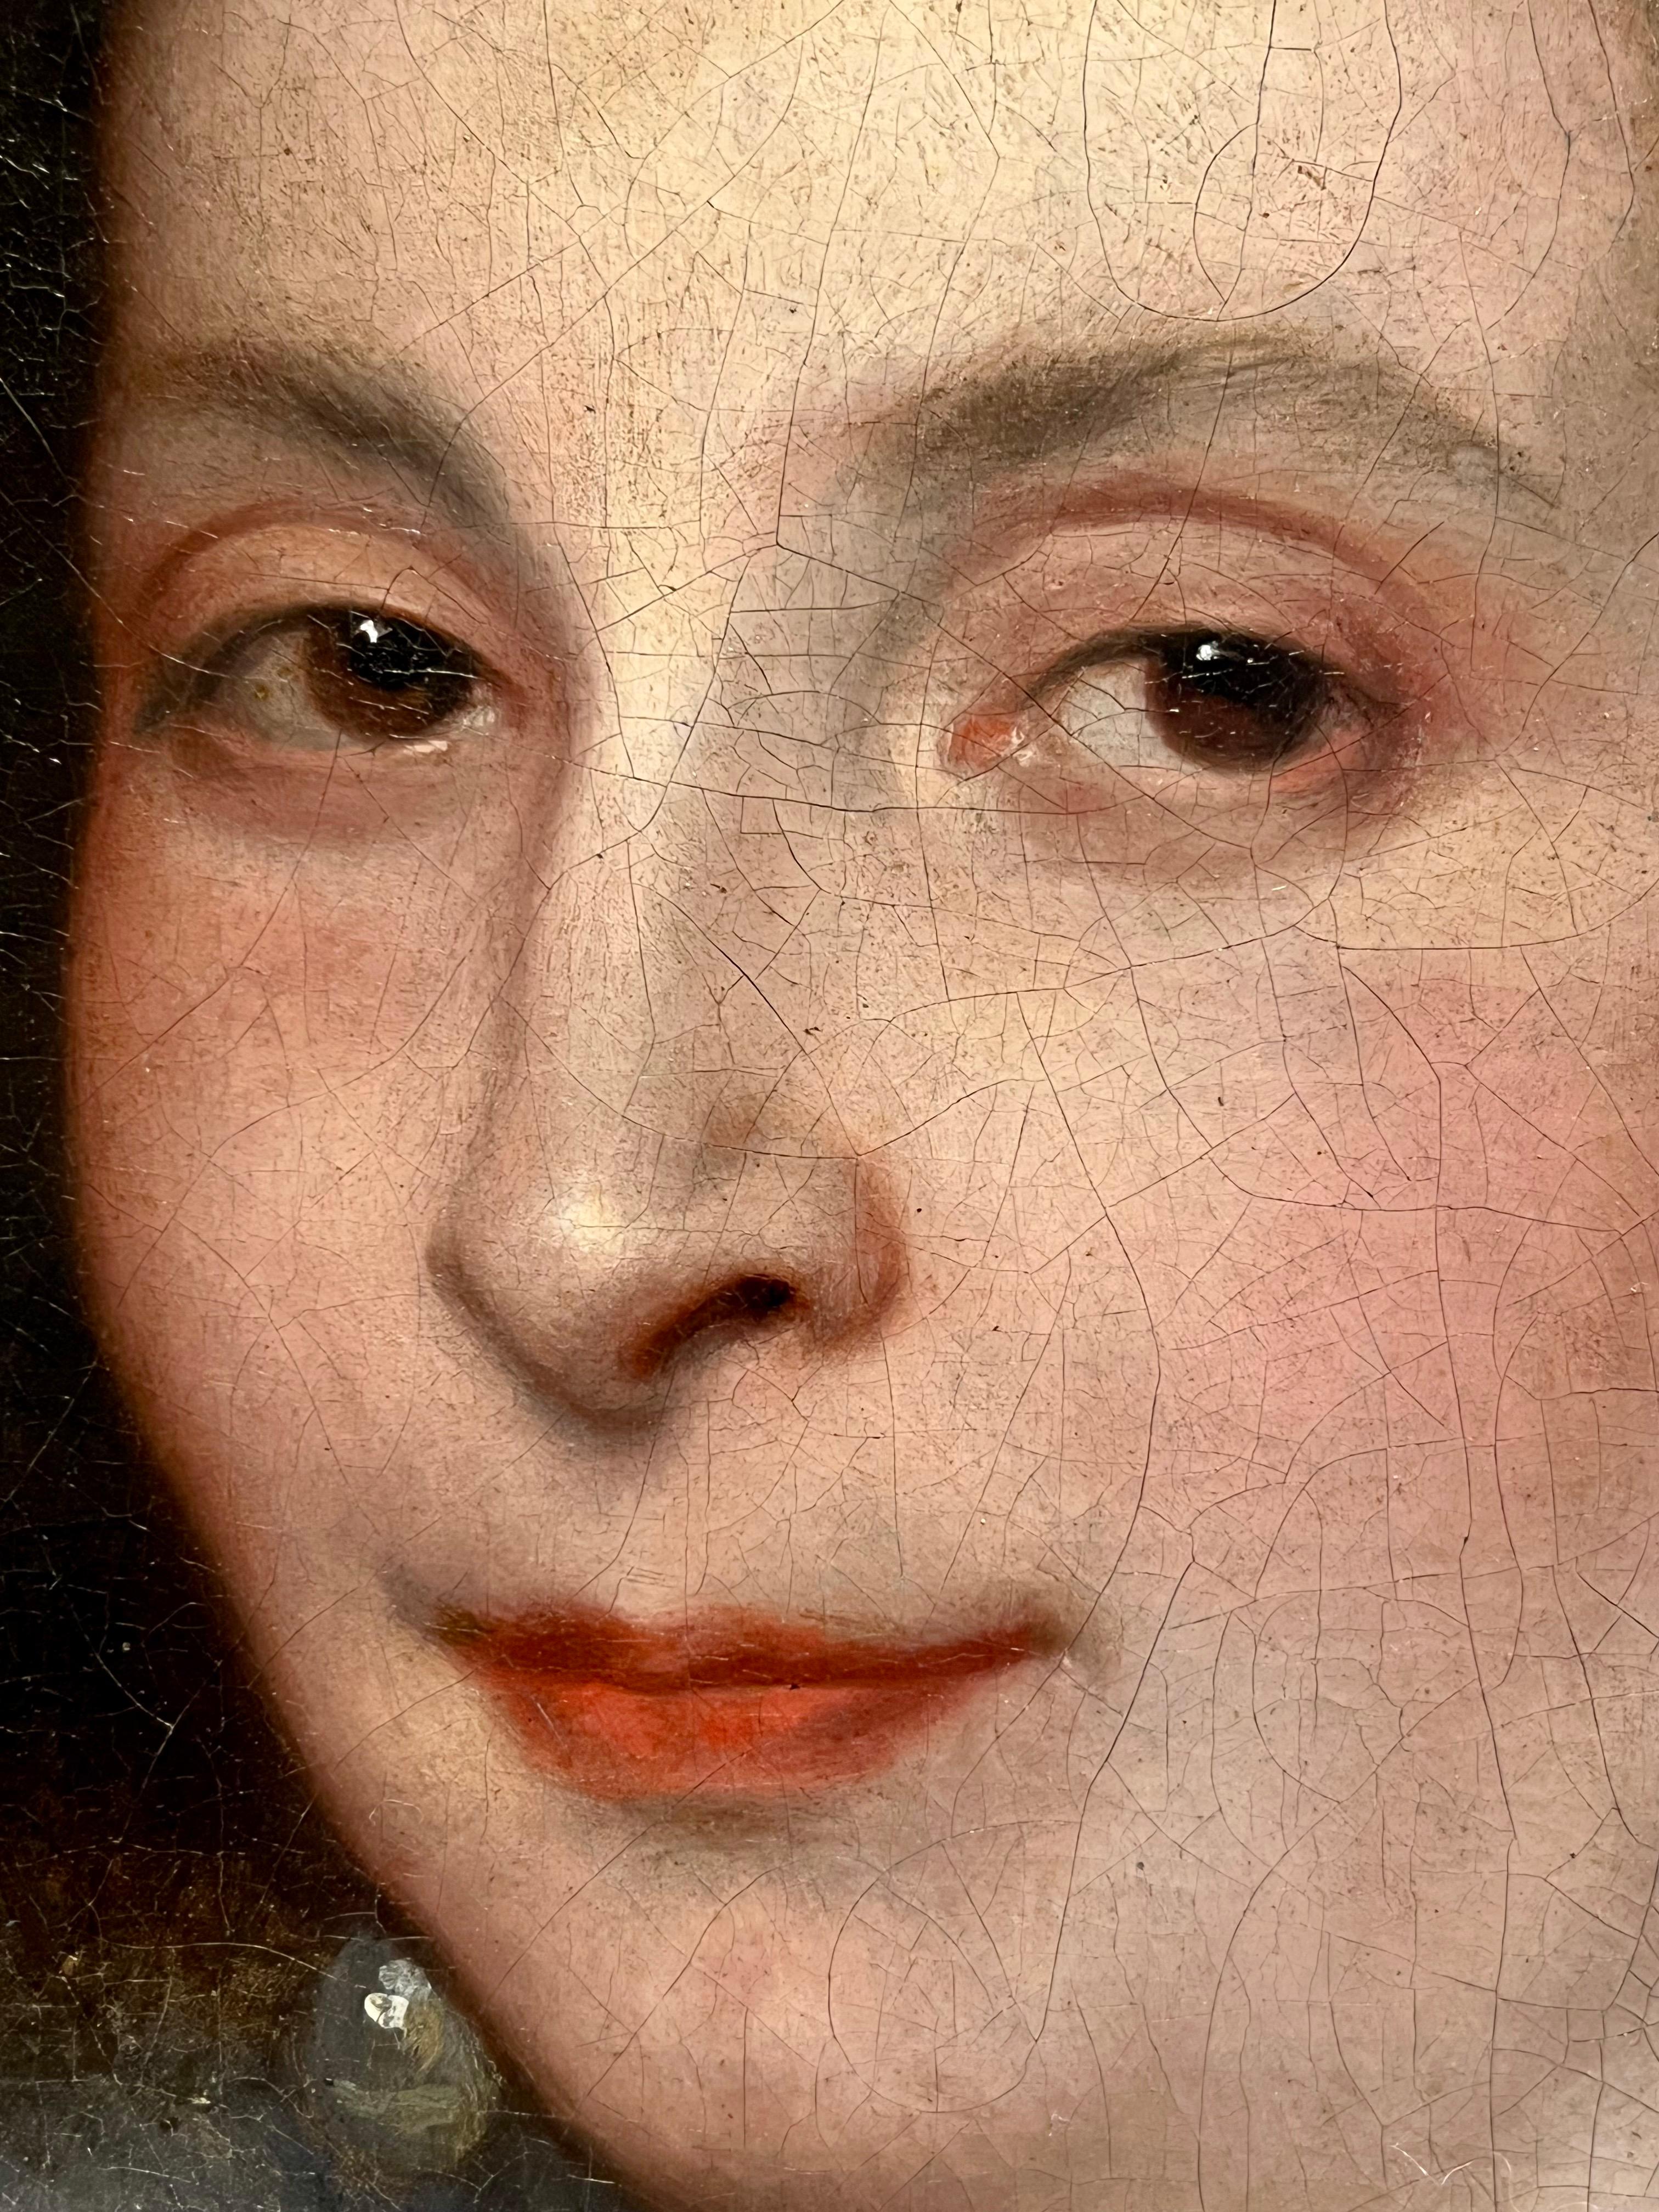 Portrait d'Anna Maria De Camiudo, peinture de maître ancienne du 17e siècle 

Anna Maria de Camiudo était une noble espagnole, fille de Don Pedro Velasques de Camiudo et de Dona Maria de los Rios y Alarcon. Née à la fin du XVIe siècle, elle a